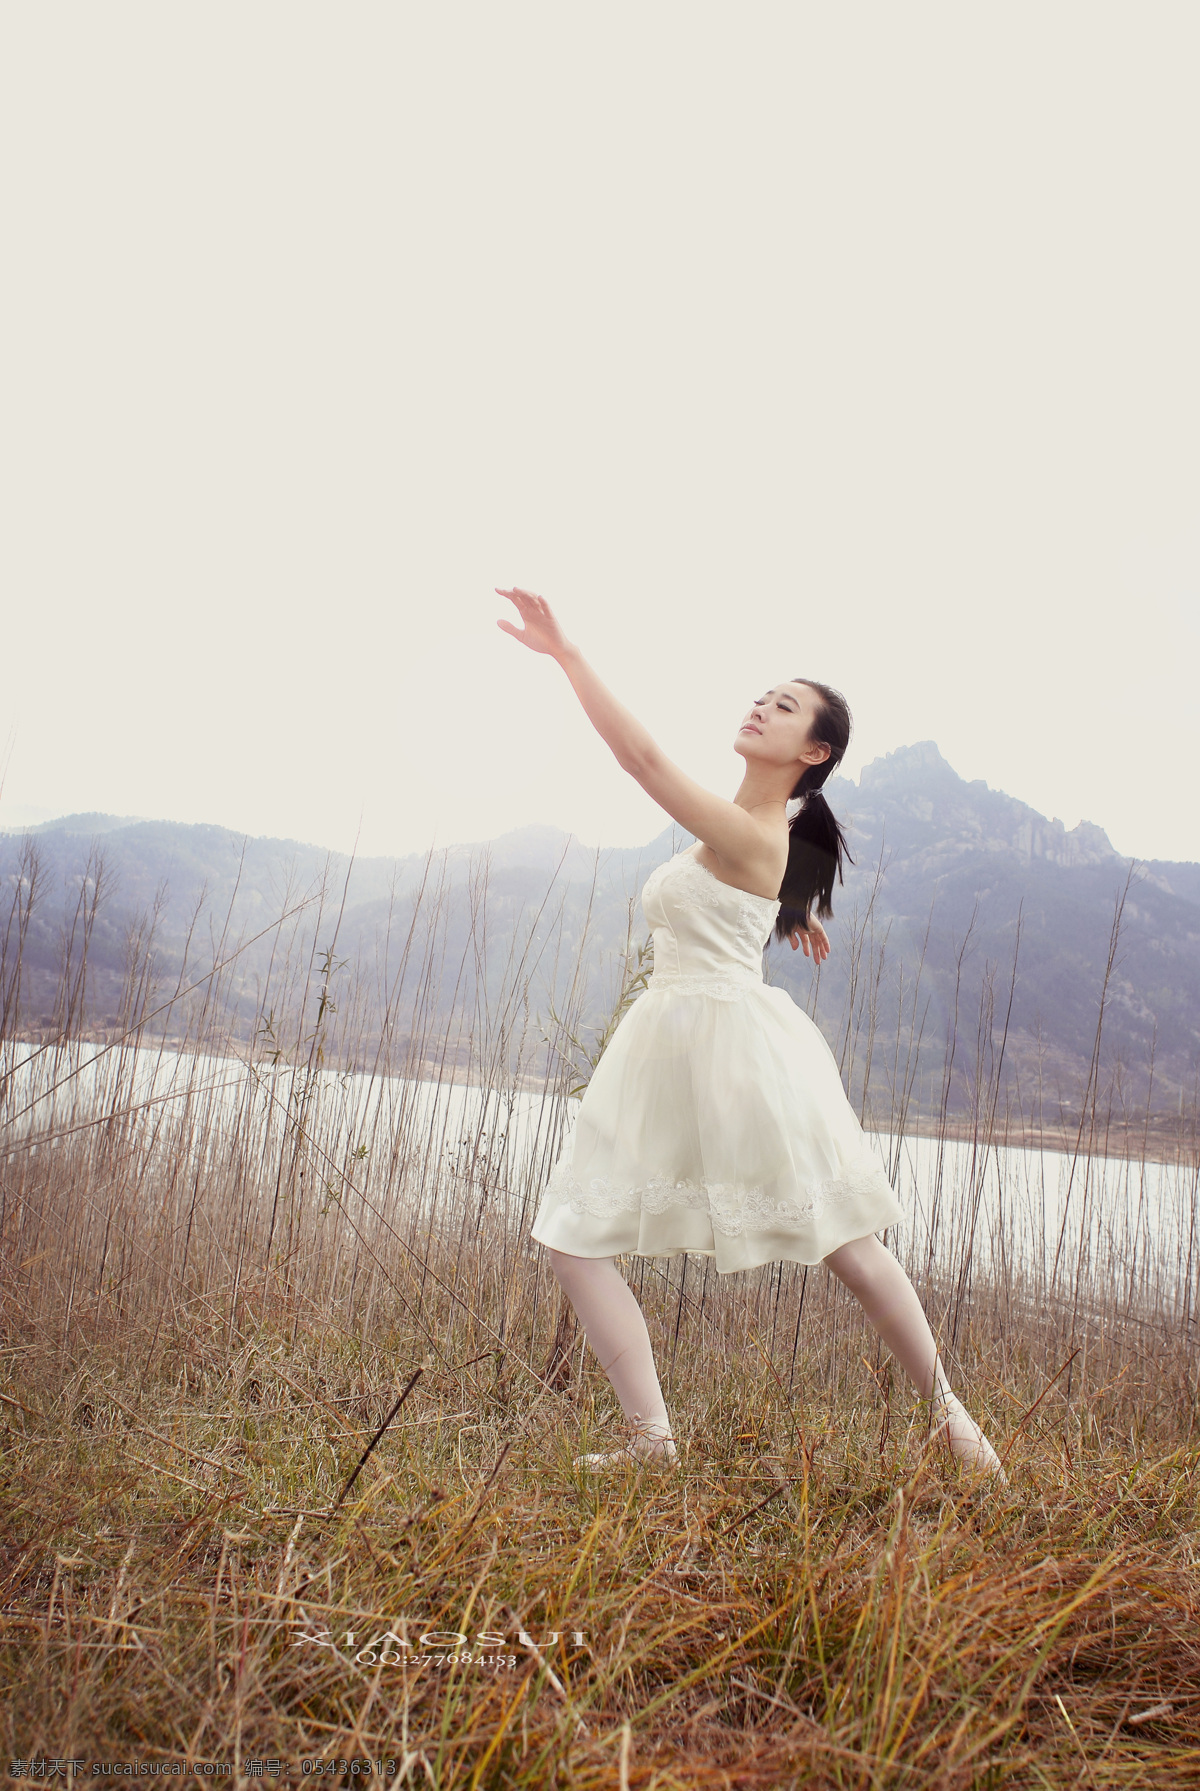 芭蕾舞 美女 舞蹈素材 舞蹈写真 人物图库 人物摄影